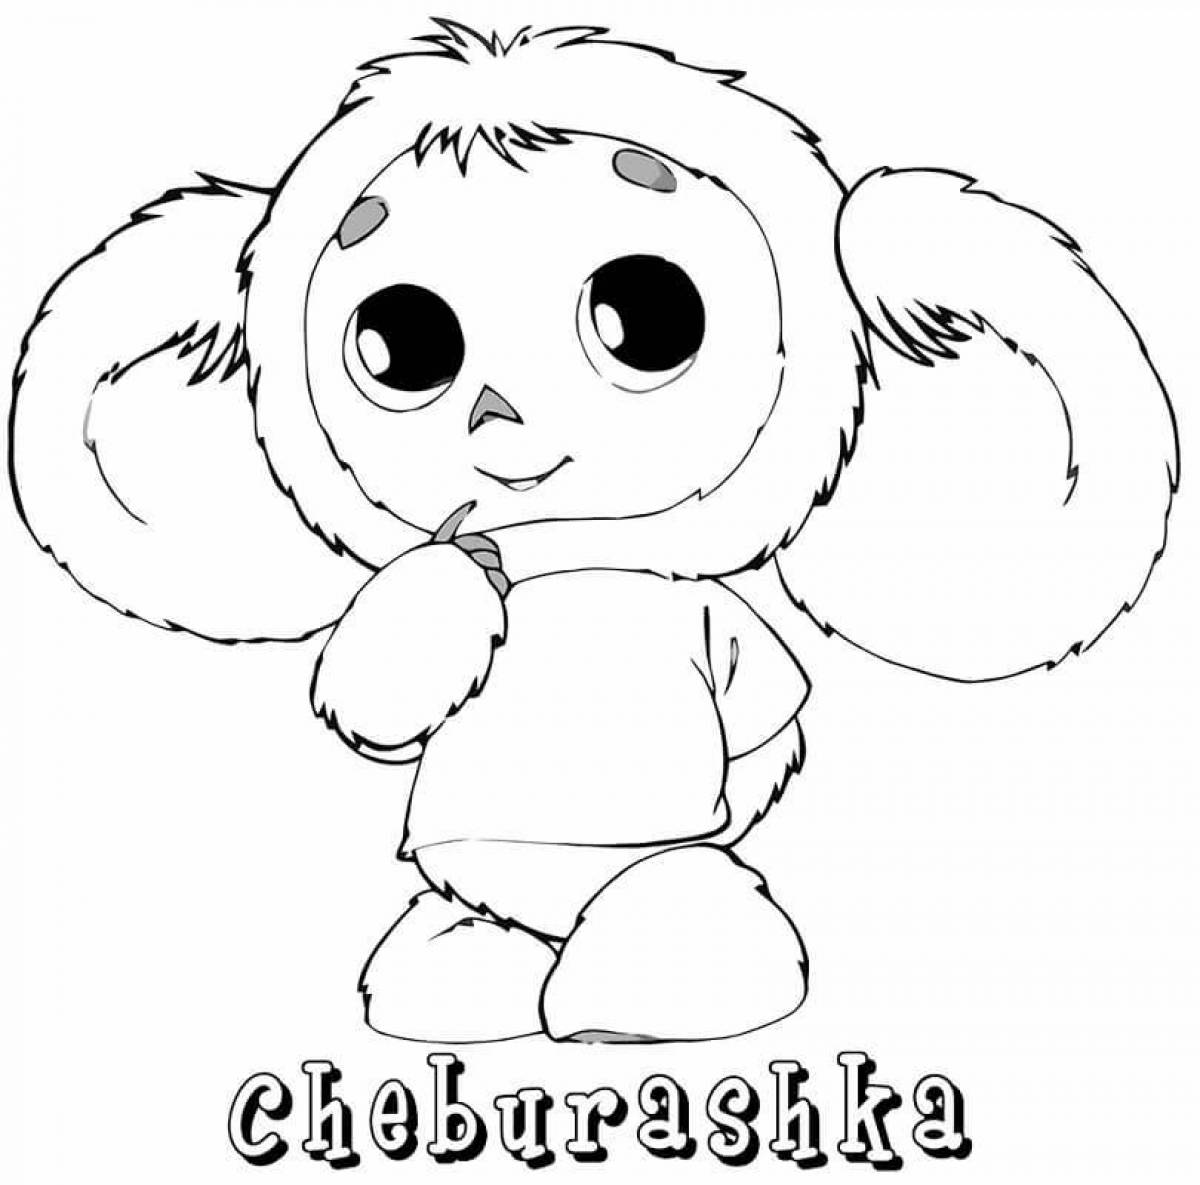 Cheburashka for kids #19